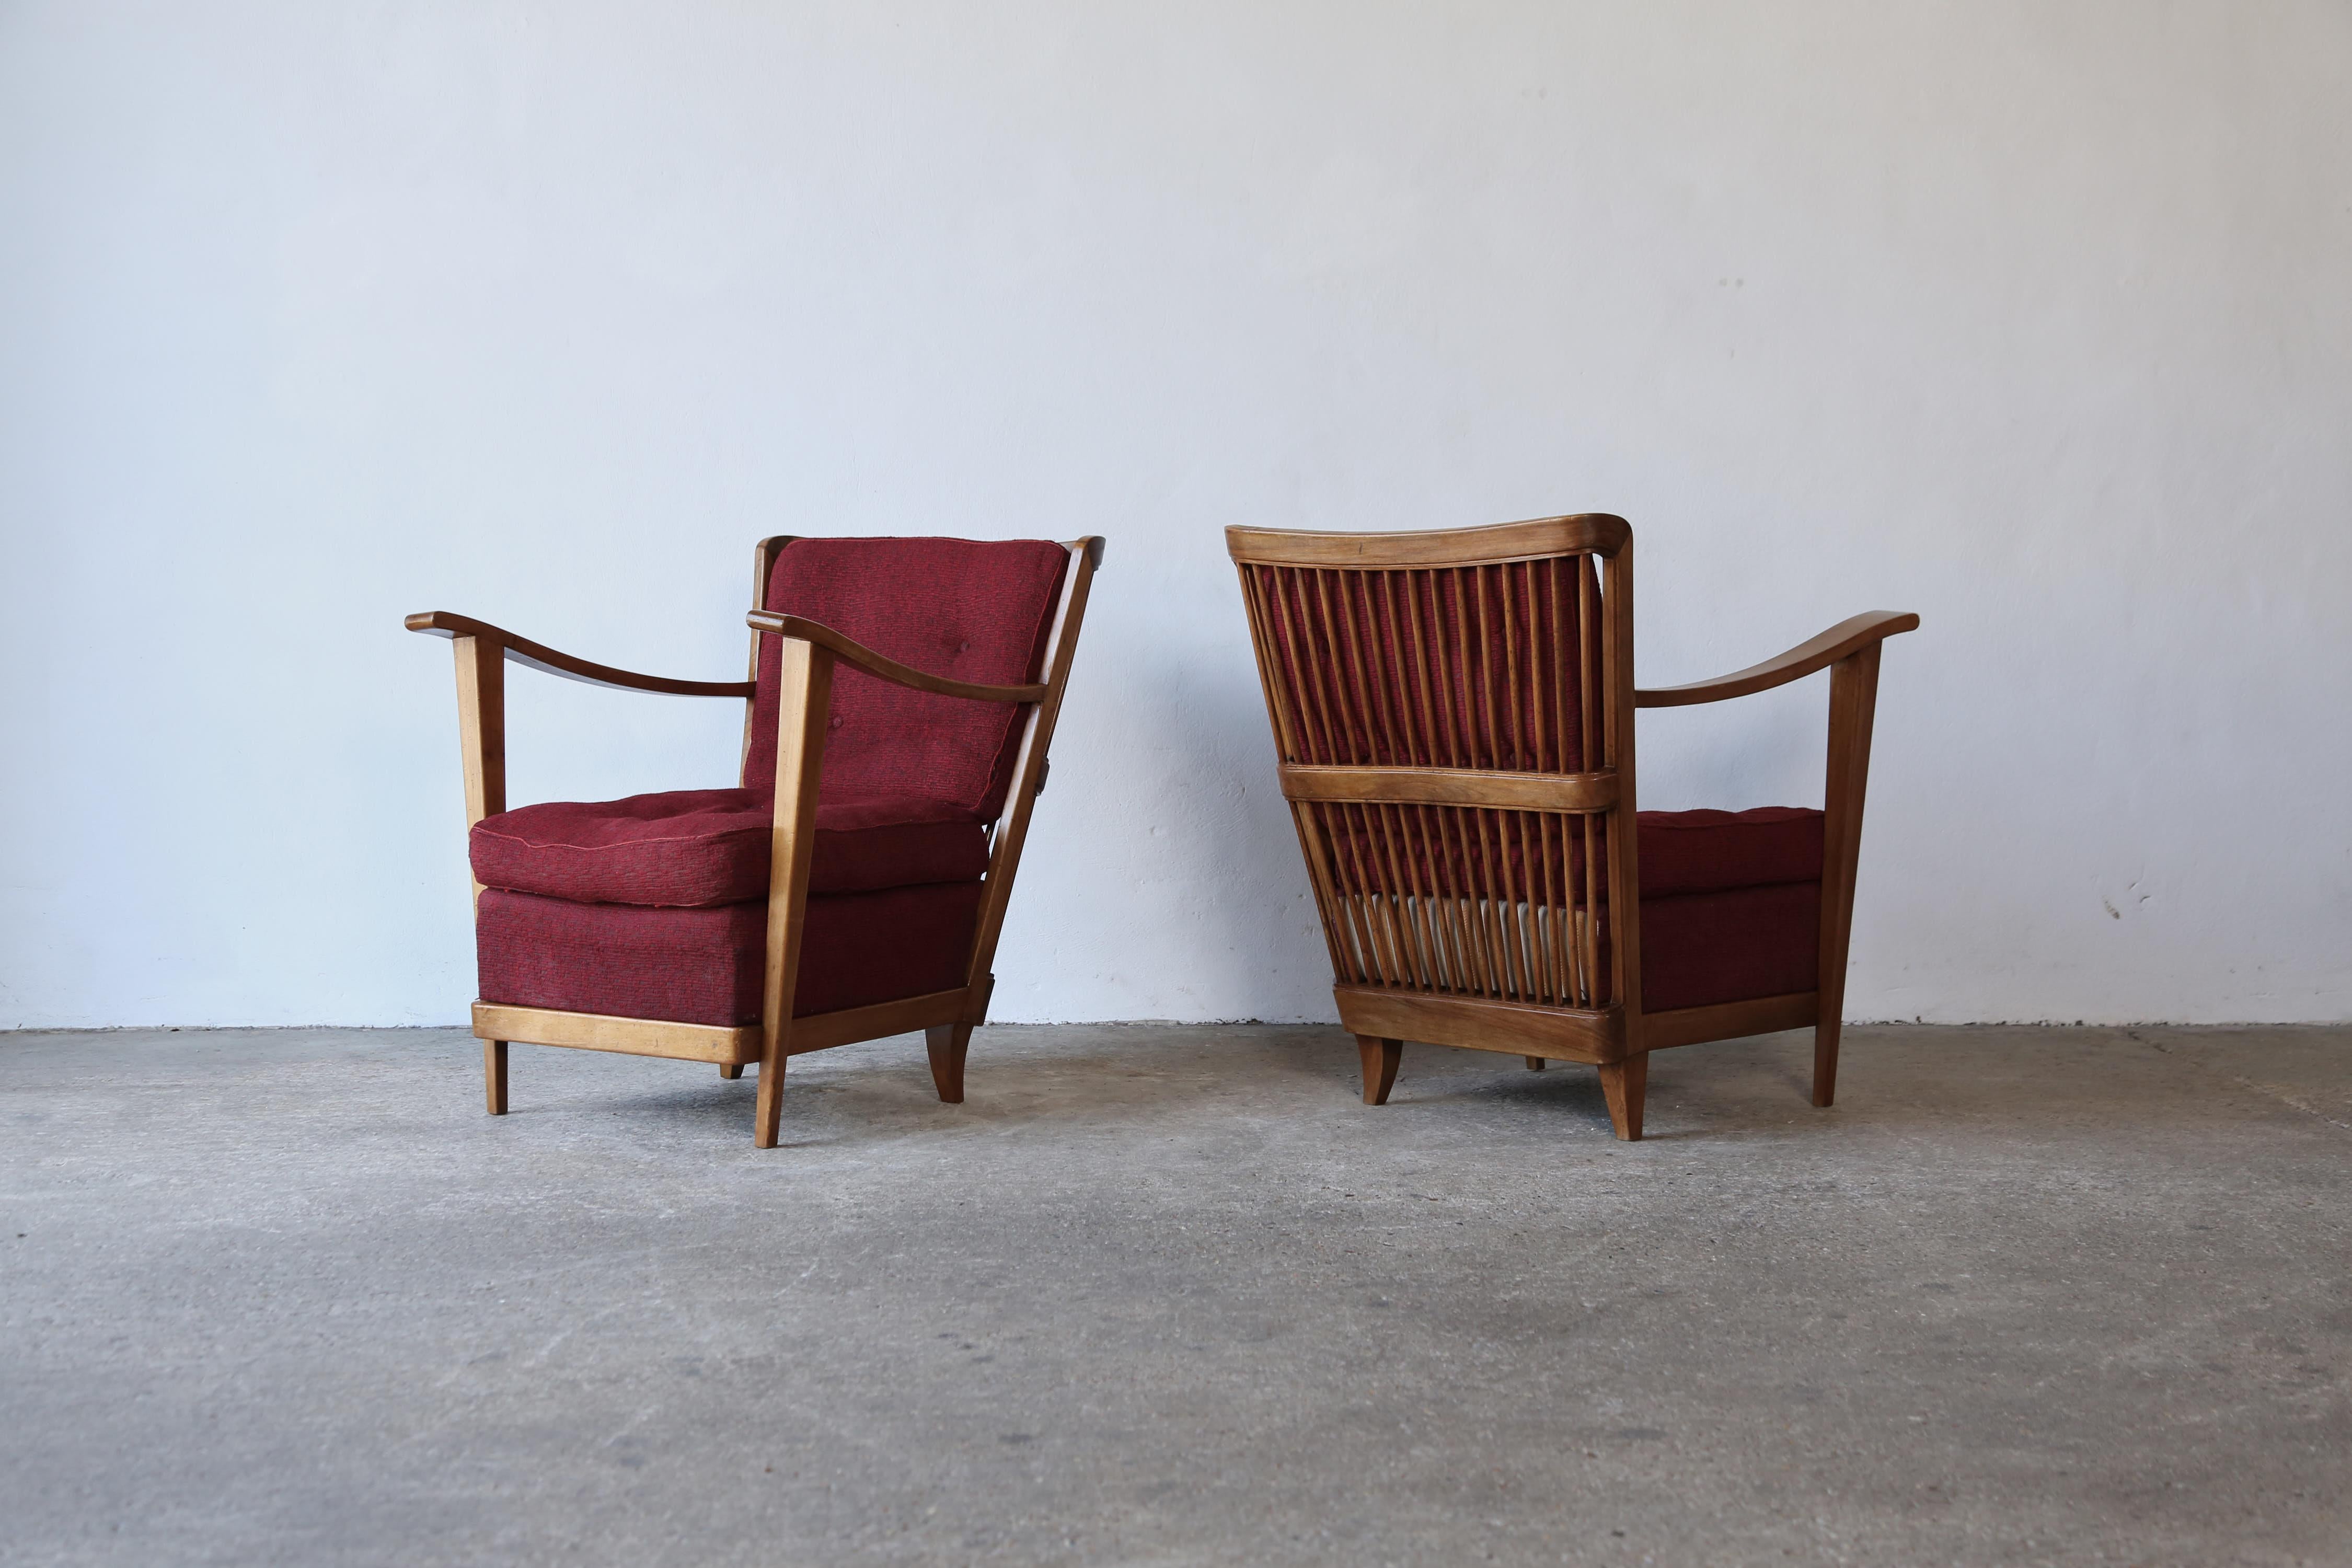 Ein wunderbares und seltenes Paar Sessel von Maurizio Tempestini, Italien, 1950er Jahre.   Die Stuhlkissen benötigen neuen Stoff.    Schneller Versand weltweit.
  
